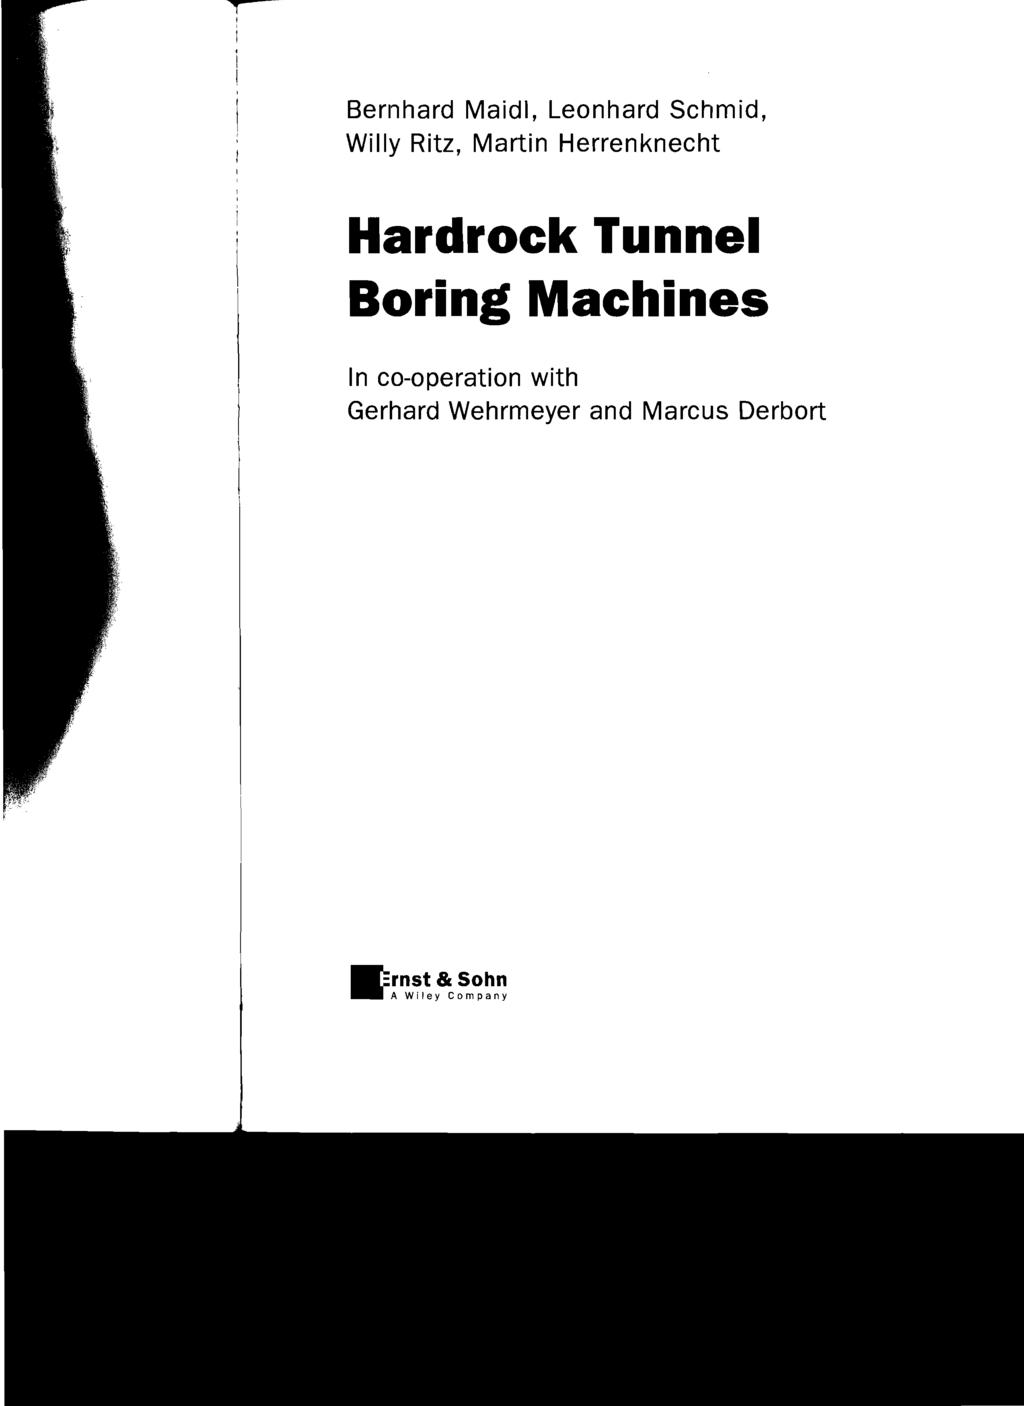 Bernhard Maidl, Leonhard Schmid, Willy Ritz, Martin Herrenknecht Hardrock Tunnel Boring